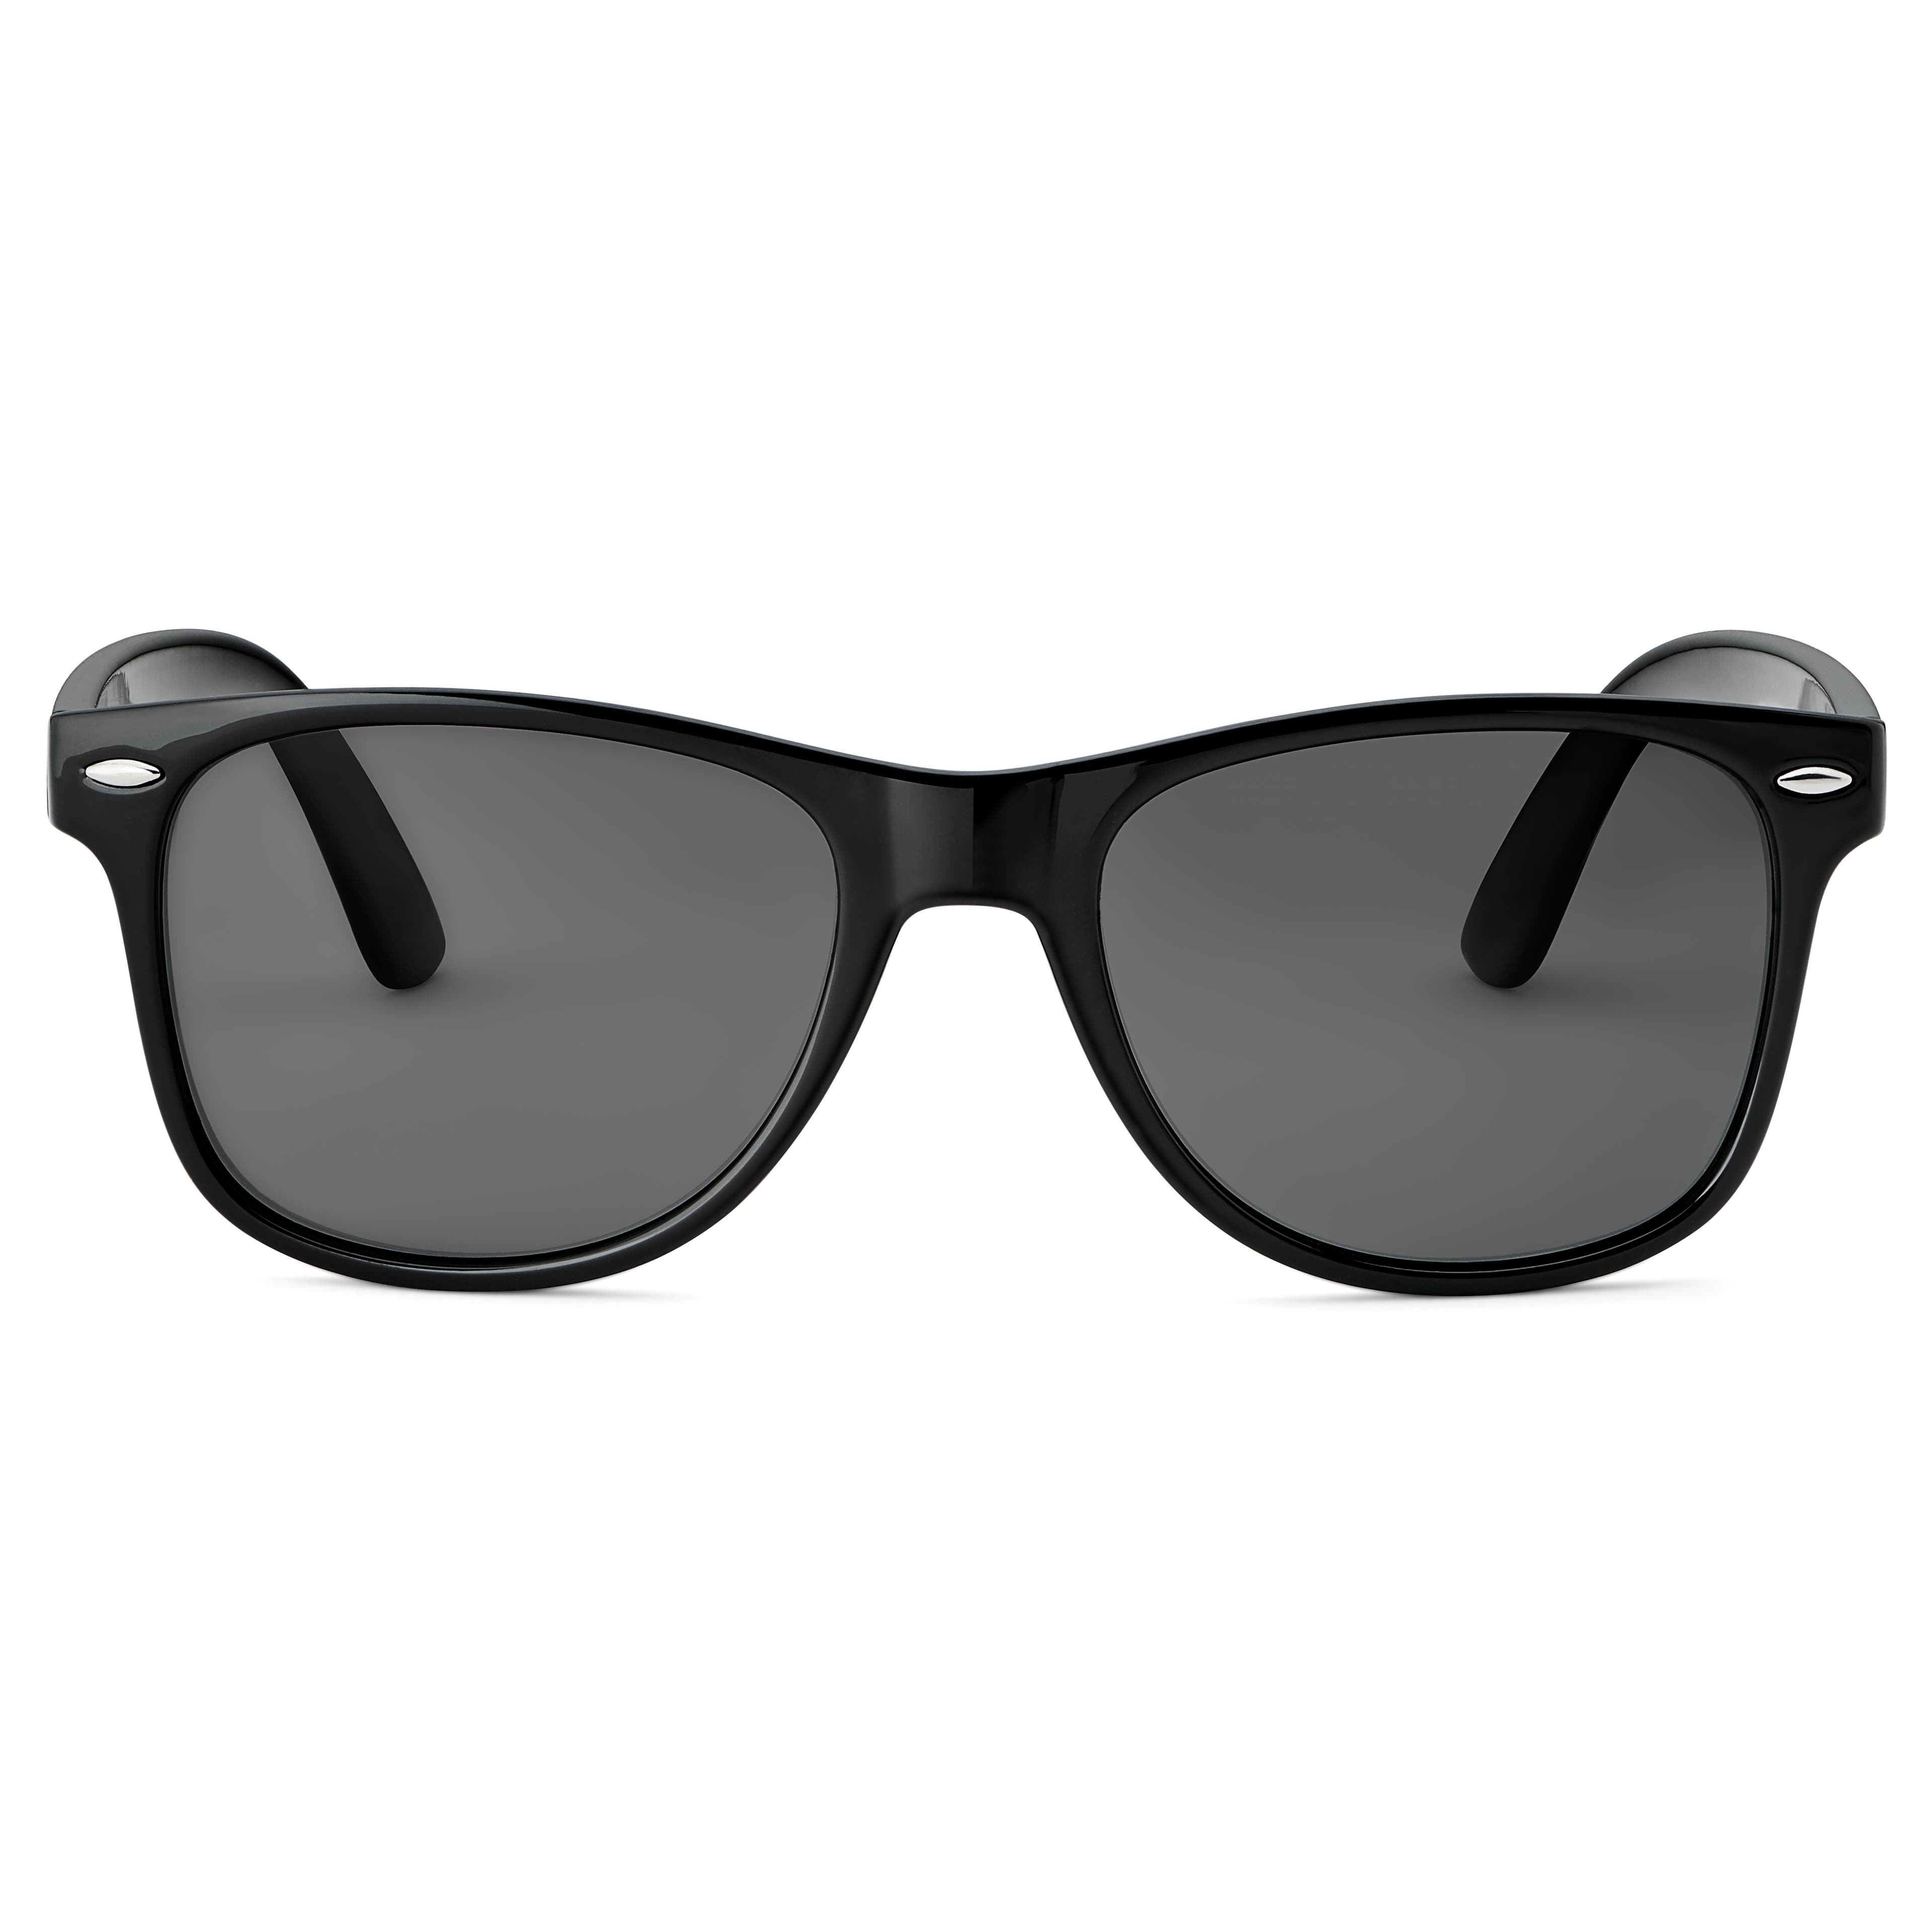 Schwarze polarisierte Retro-Sonnenbrille